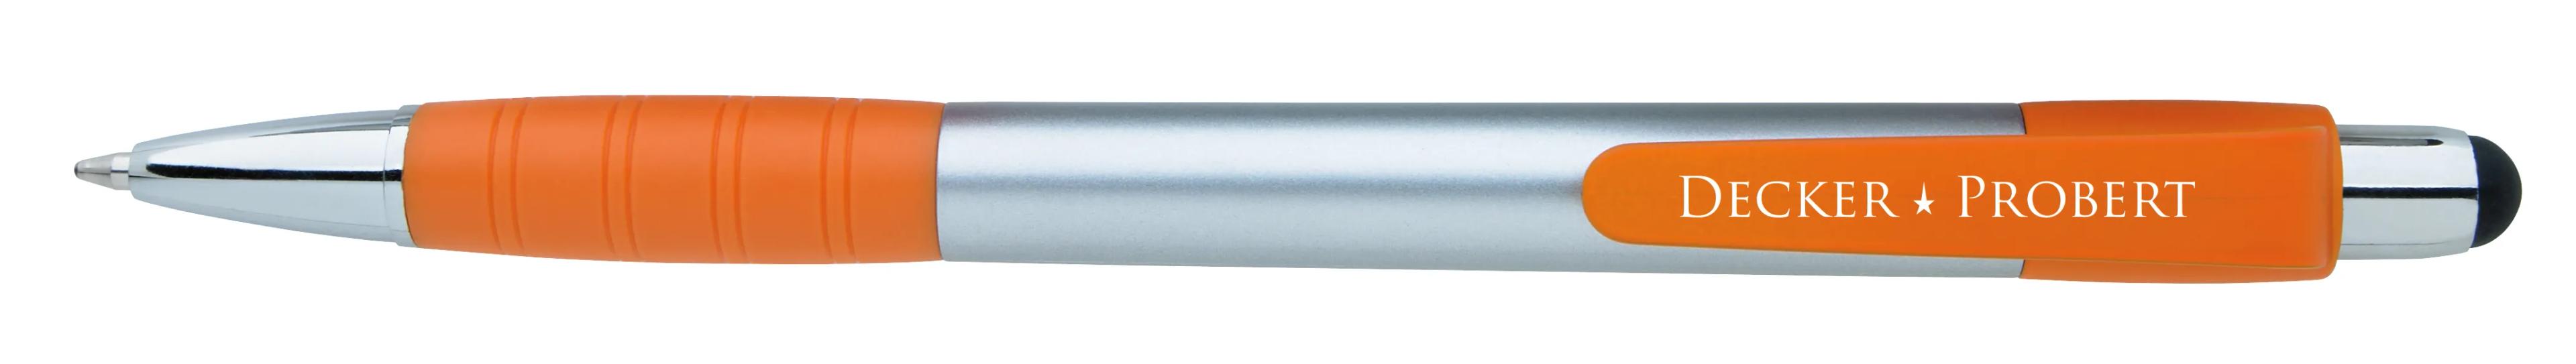 Silver Element Stylus Pen 43 of 53